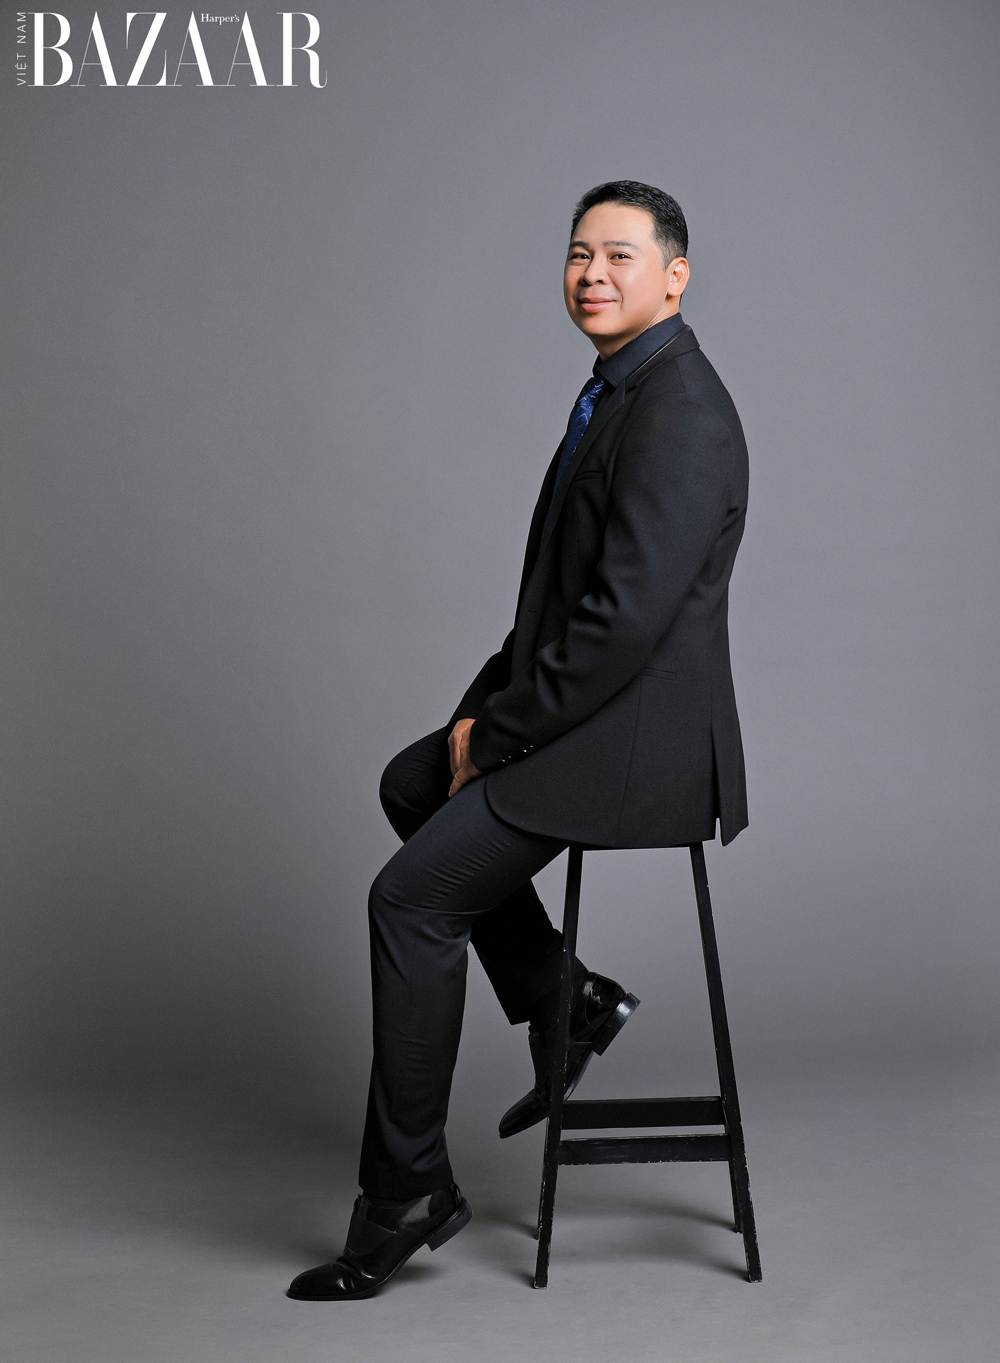 Trước khi làm nghệ thuật, đạo diễn Nguyễn Hiếu Tâm từng là một doanh nhân thành đạt